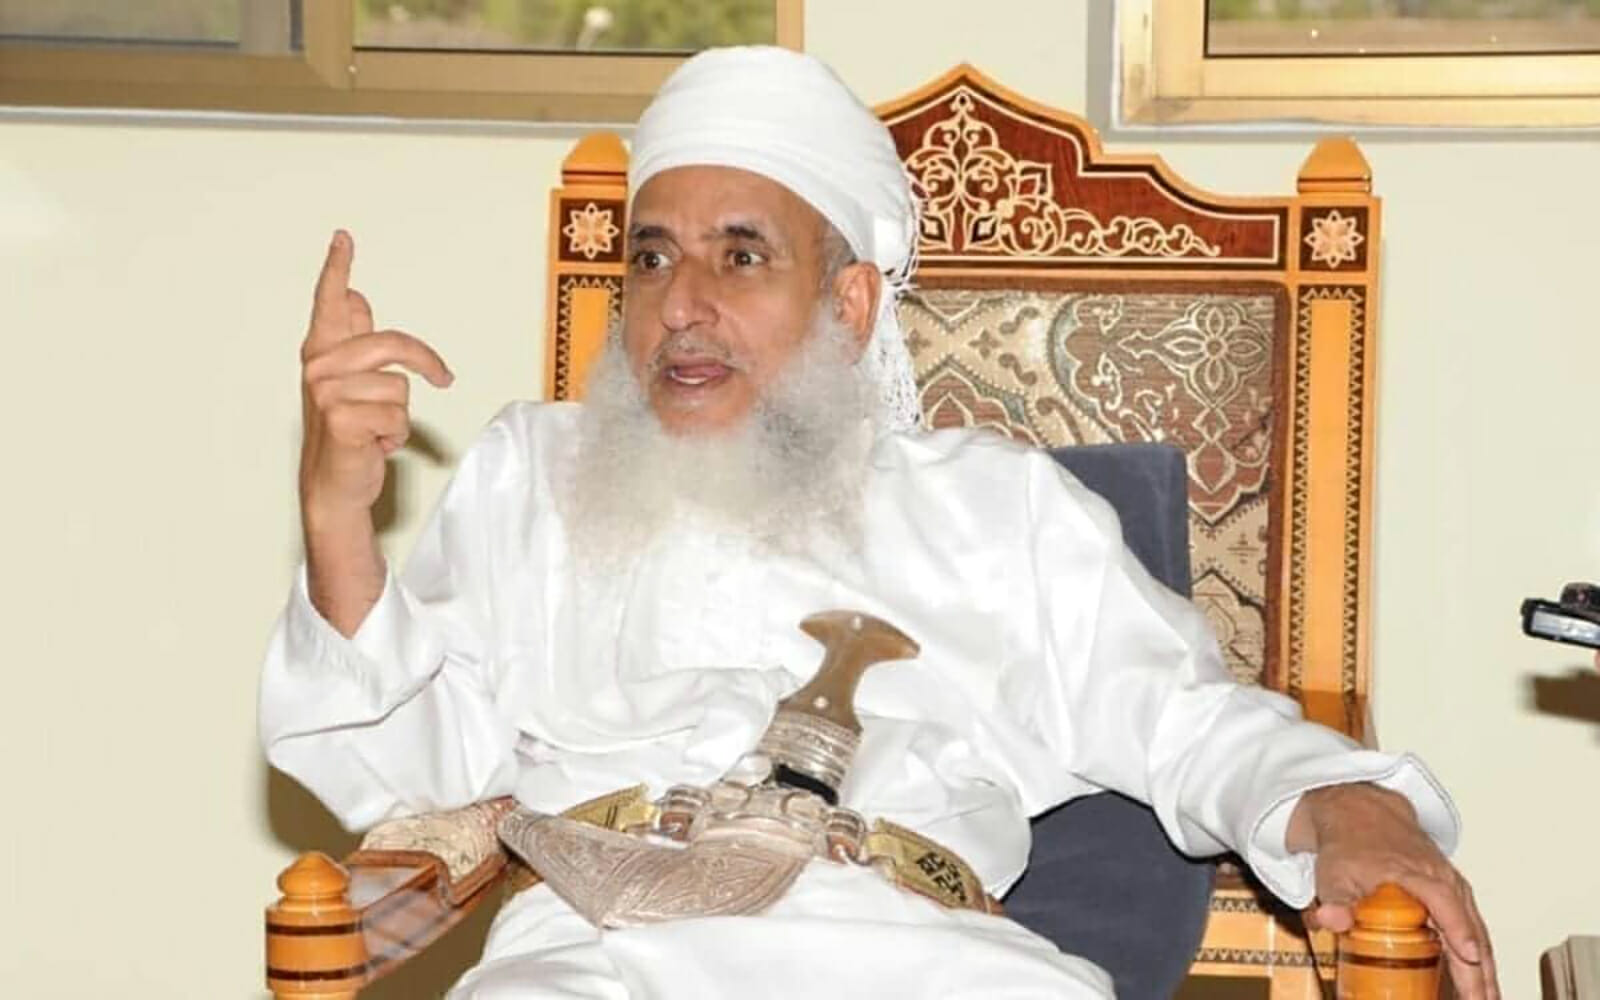 أحمد بن حمد الخليلي منع المكبرات الخارجية في المساجد سلطنة عمان watanserb.com